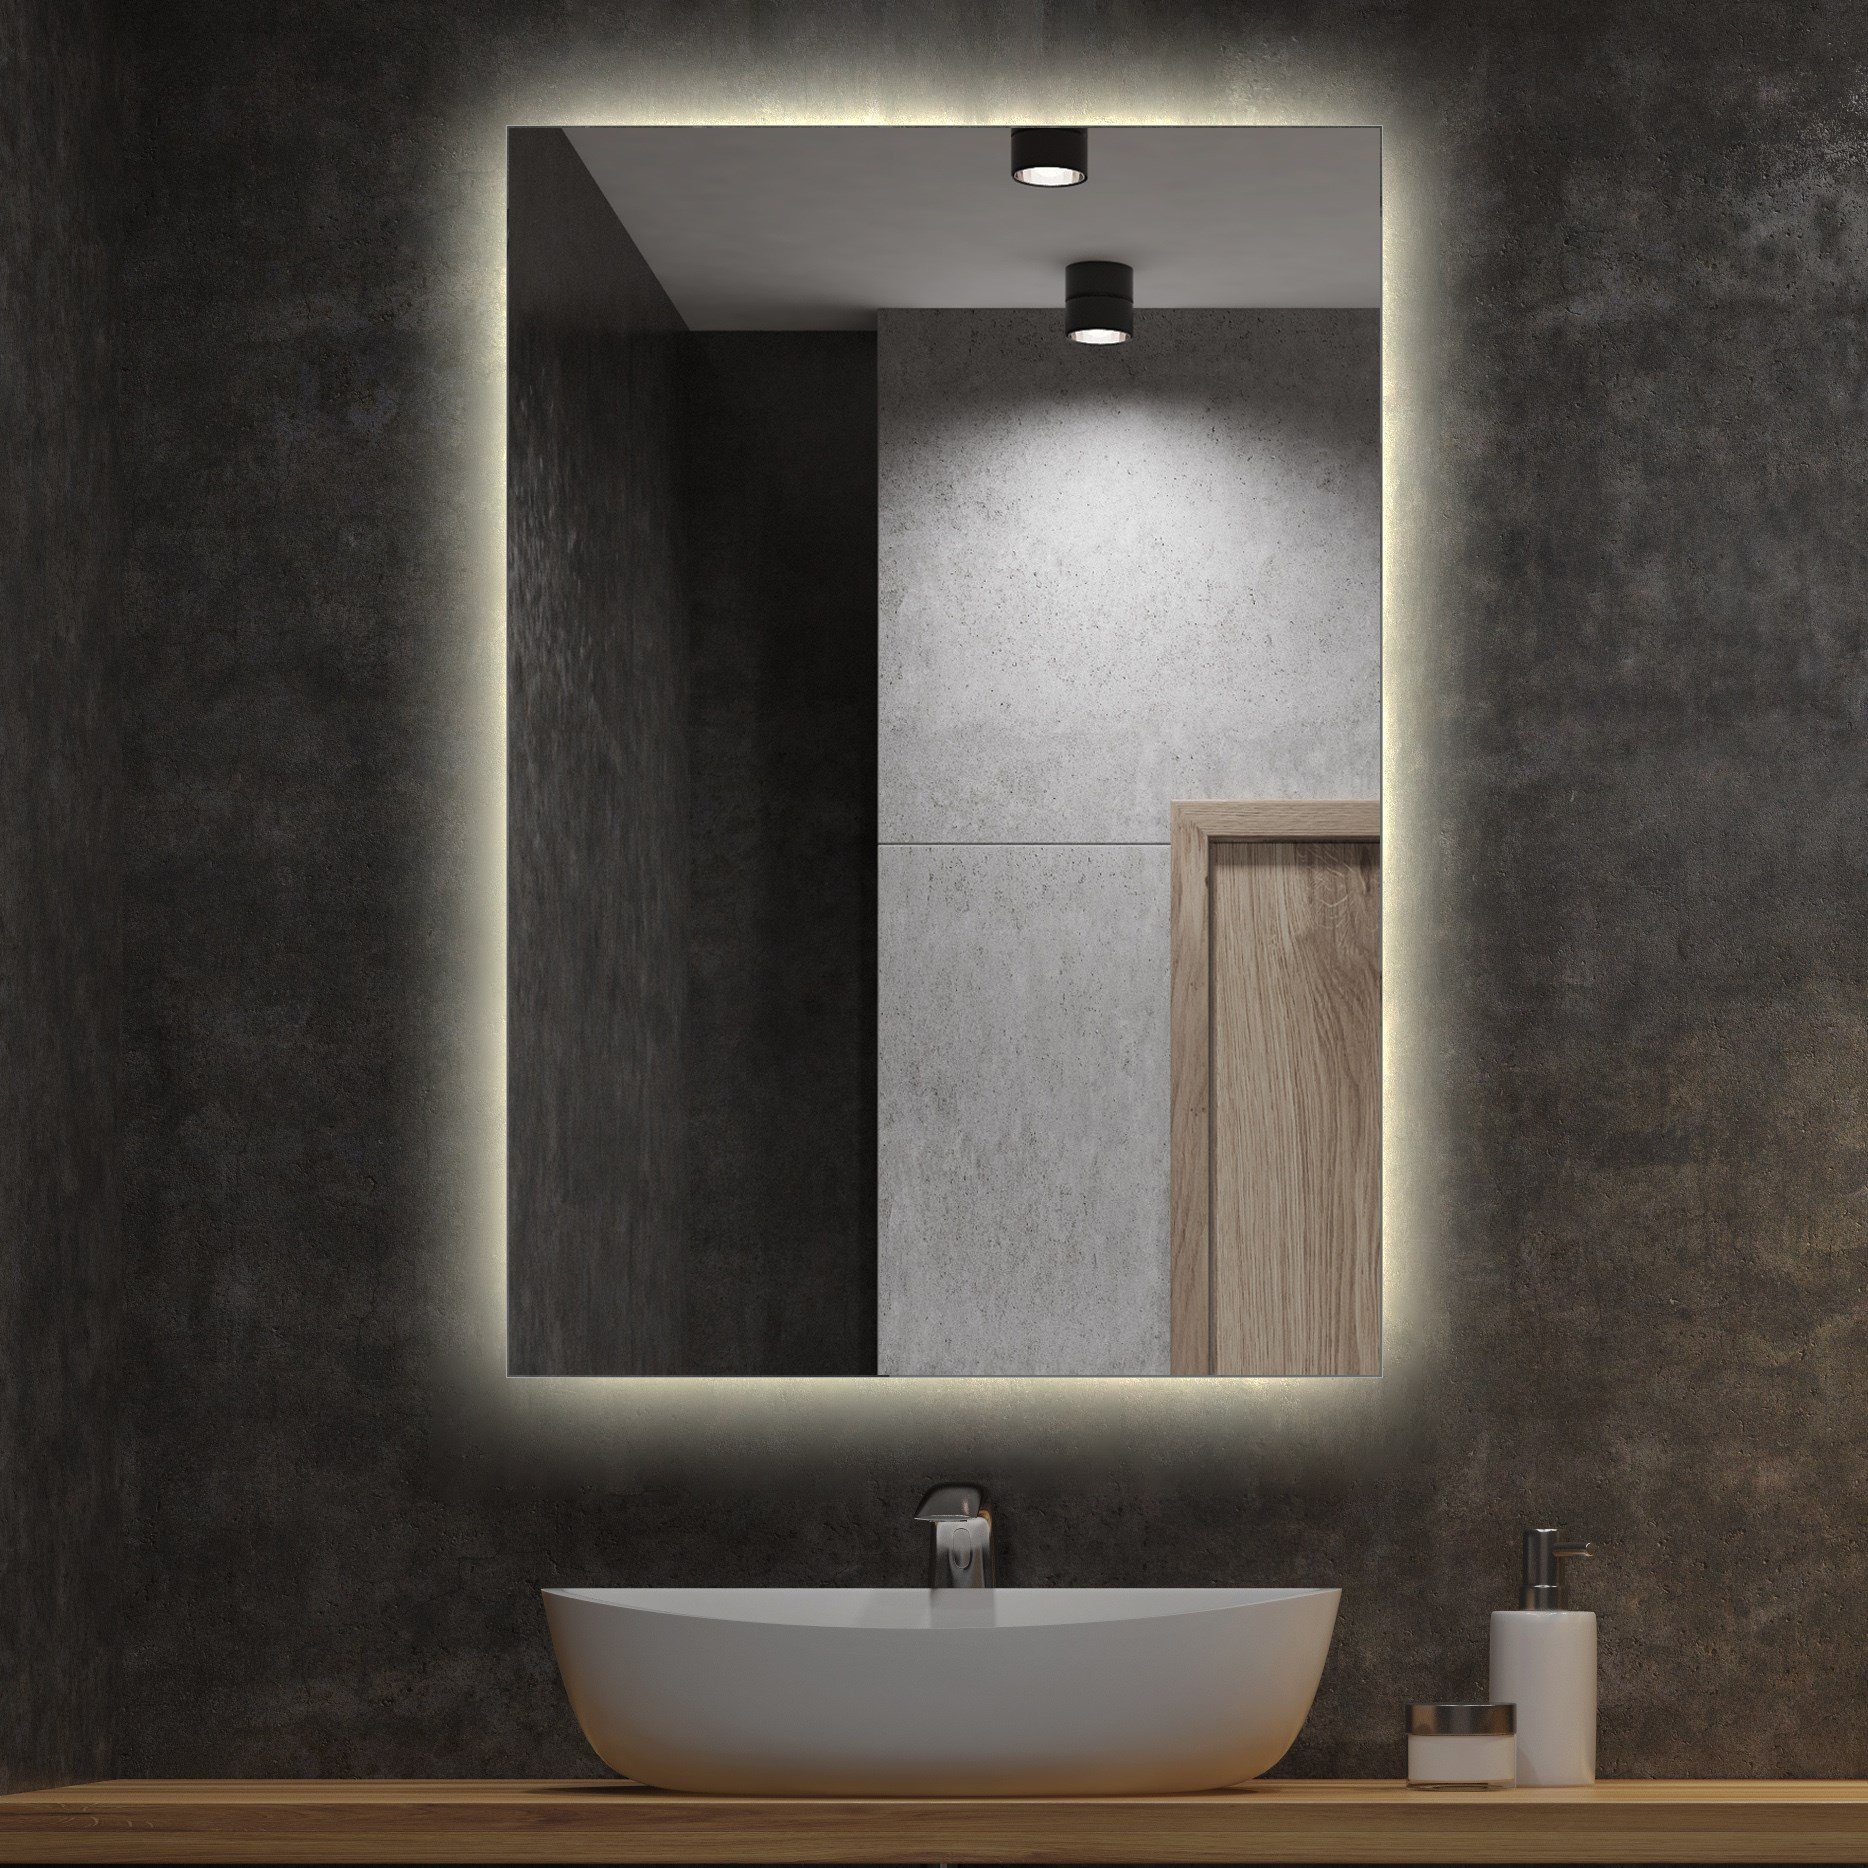 Tulup LED-Lichtspiegel Badspiegel LED Beleuchtung Rechteckig Spiegel Warmweiß, Warmweiß 3000K